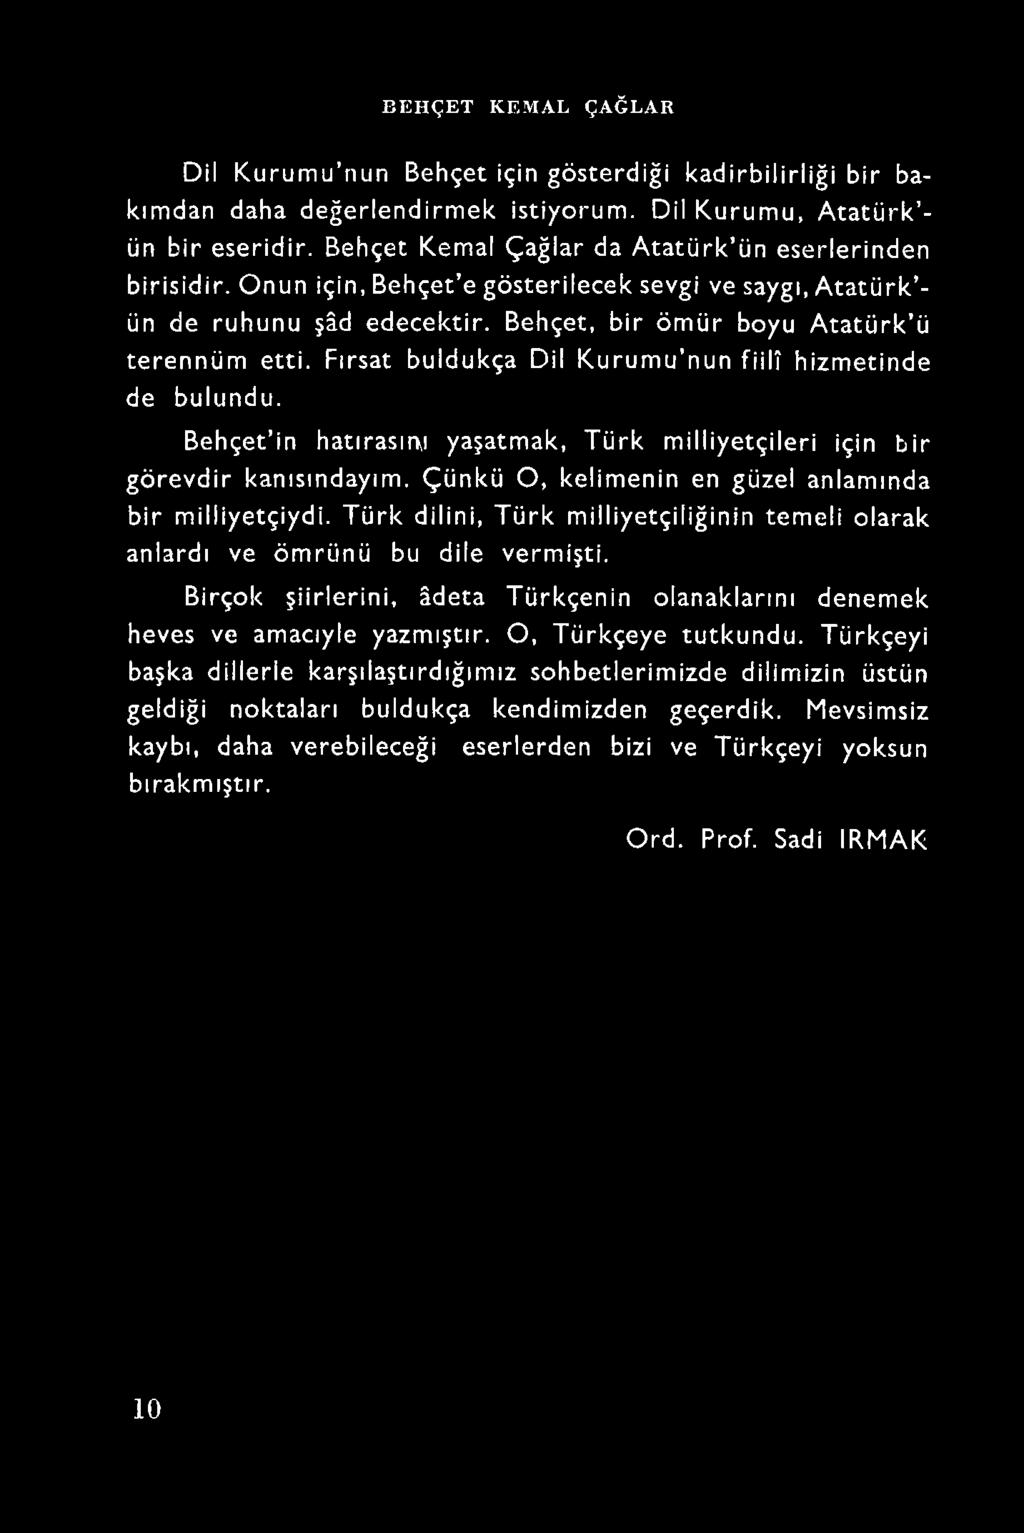 Türk dilini, Türk milliyetçiliğinin temeli olarak anlardı ve ömrünü bu dile vermişti.